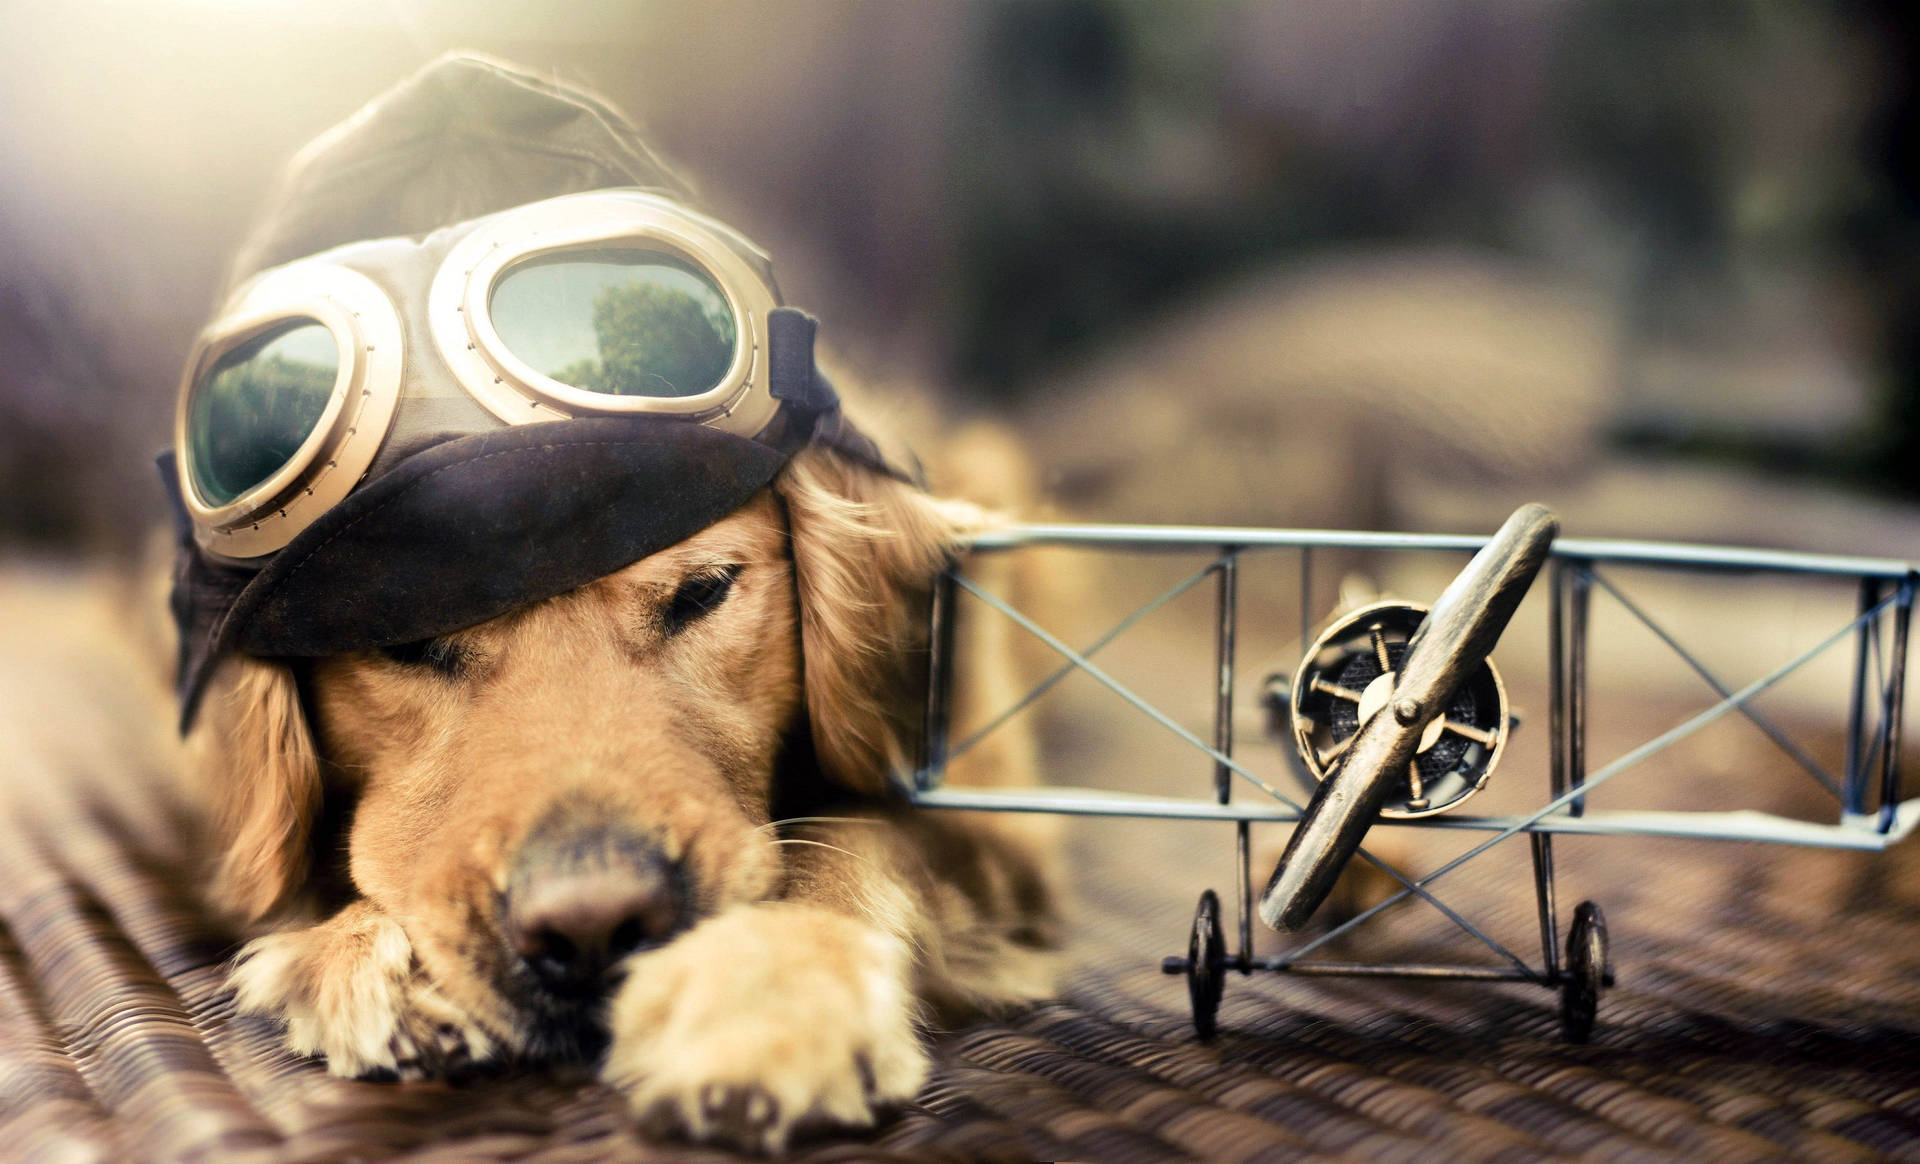 Cute Dog Bi-plane Toy